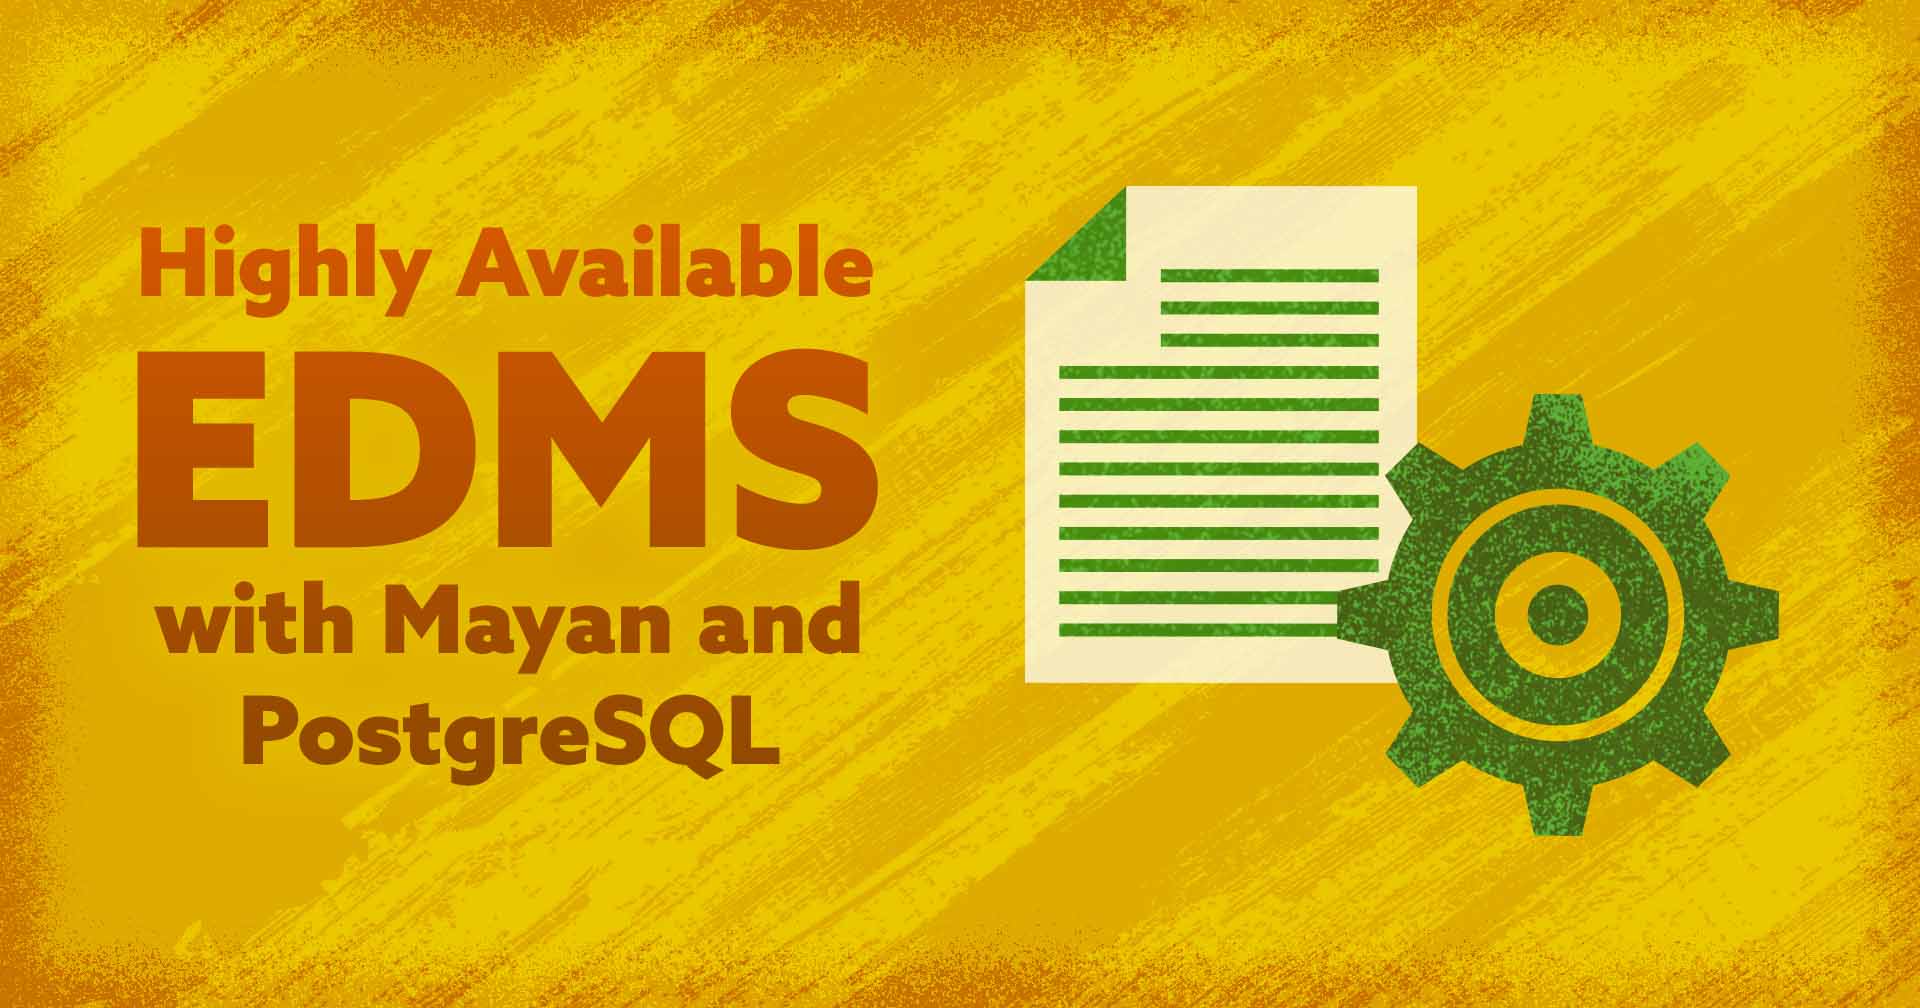 _Hochverfügbares-EDMS-mit-Mayan-und-PostgreSQL